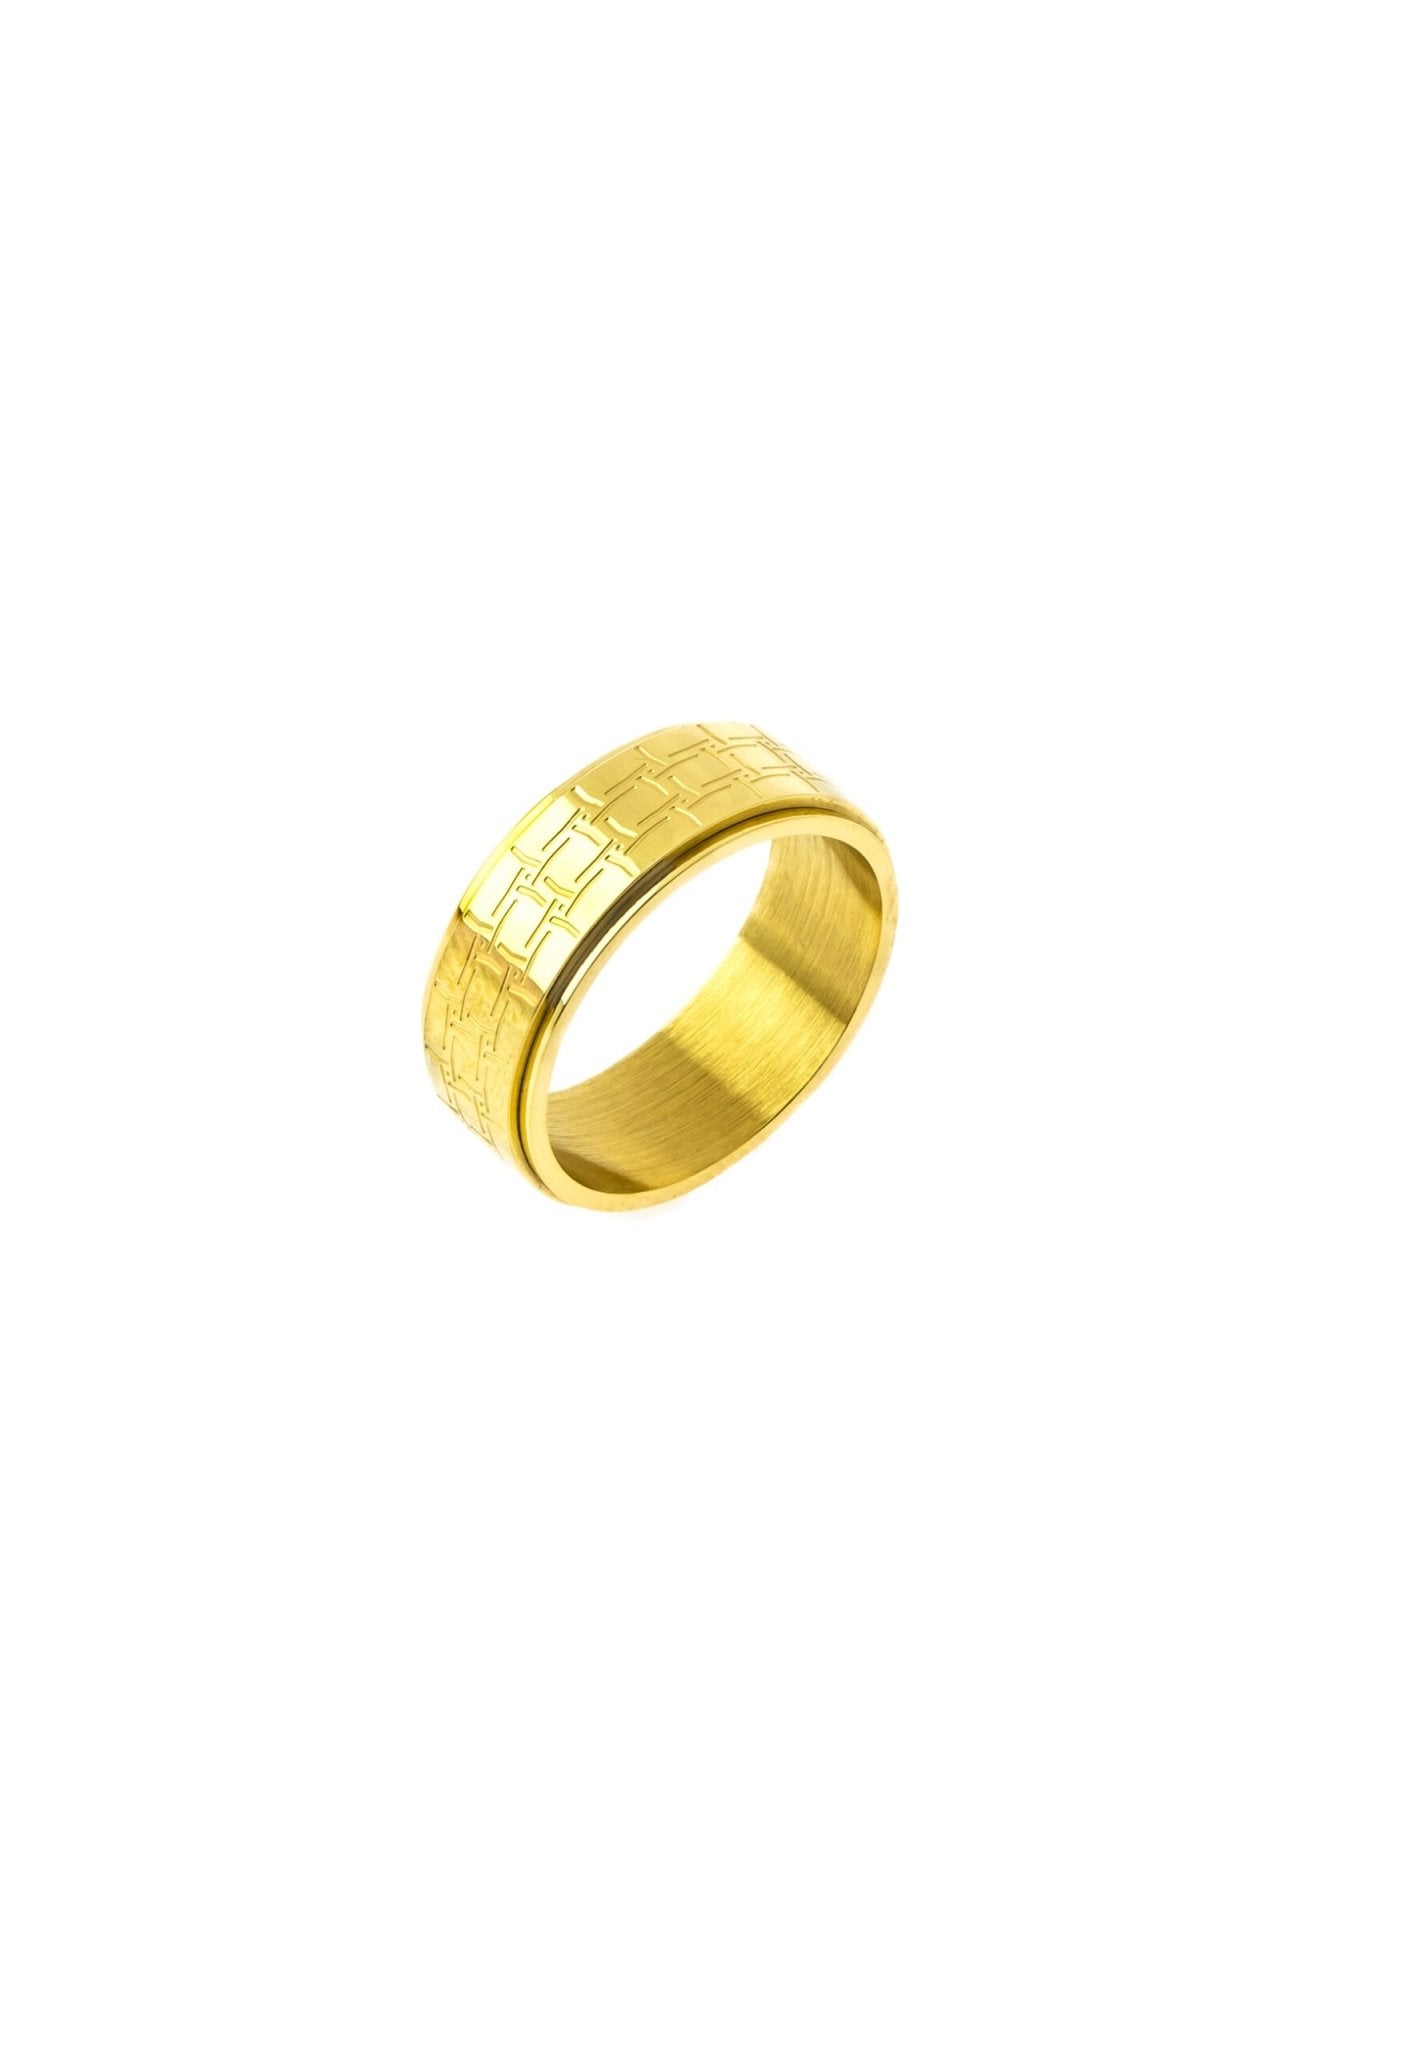 Pasarel - 14k Yellow Gold & Sterling Silver Jade Rotating Ring